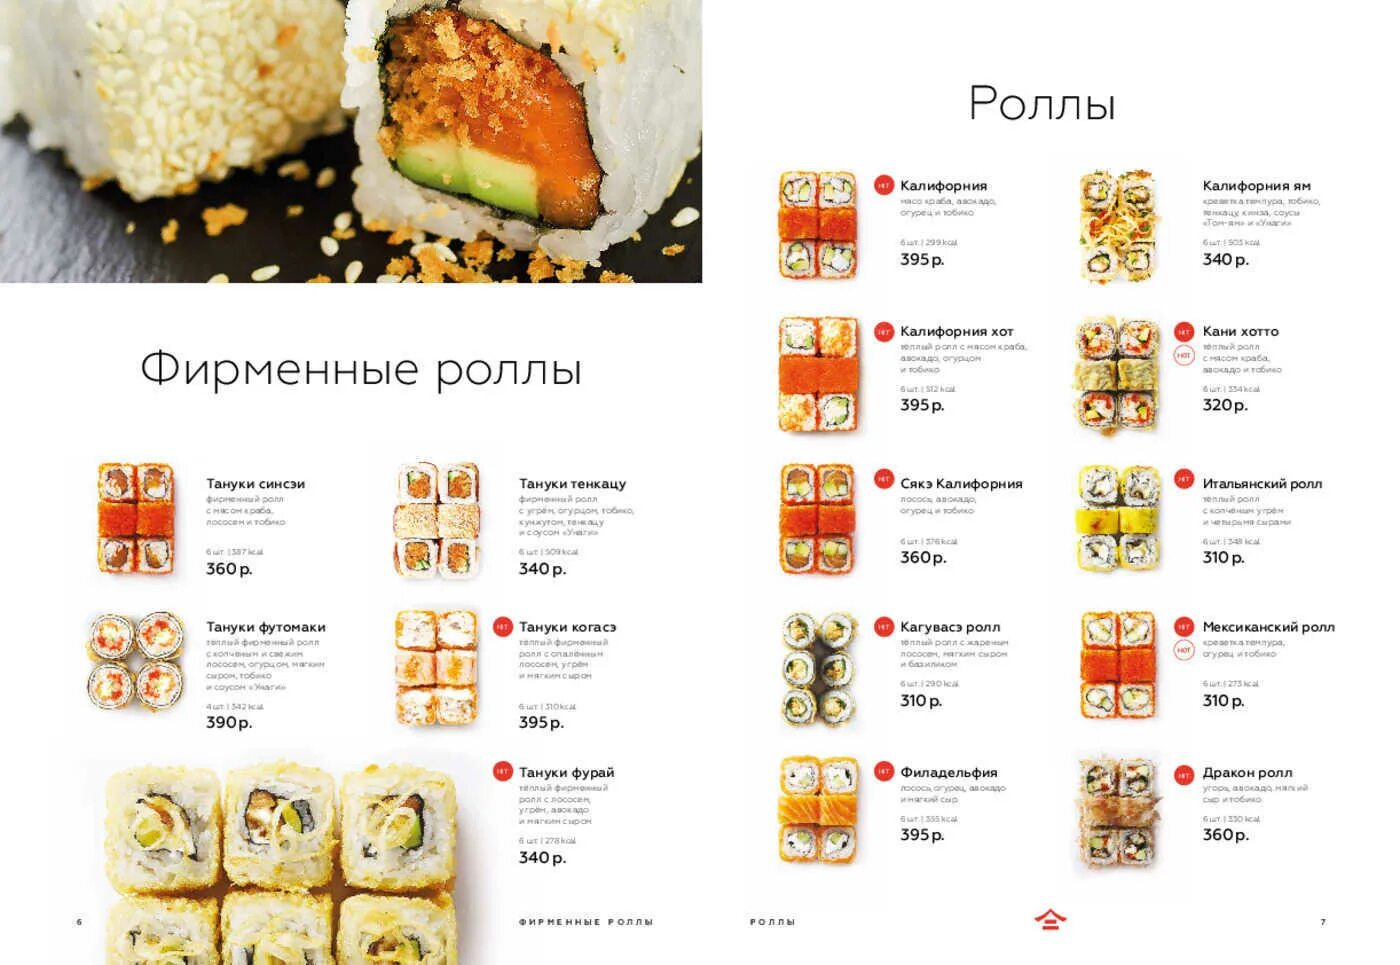 Тануки меню ресторана Москва. Меню ресторан Тануки роллы. Тануки меню ресторана Москва алкоголь.